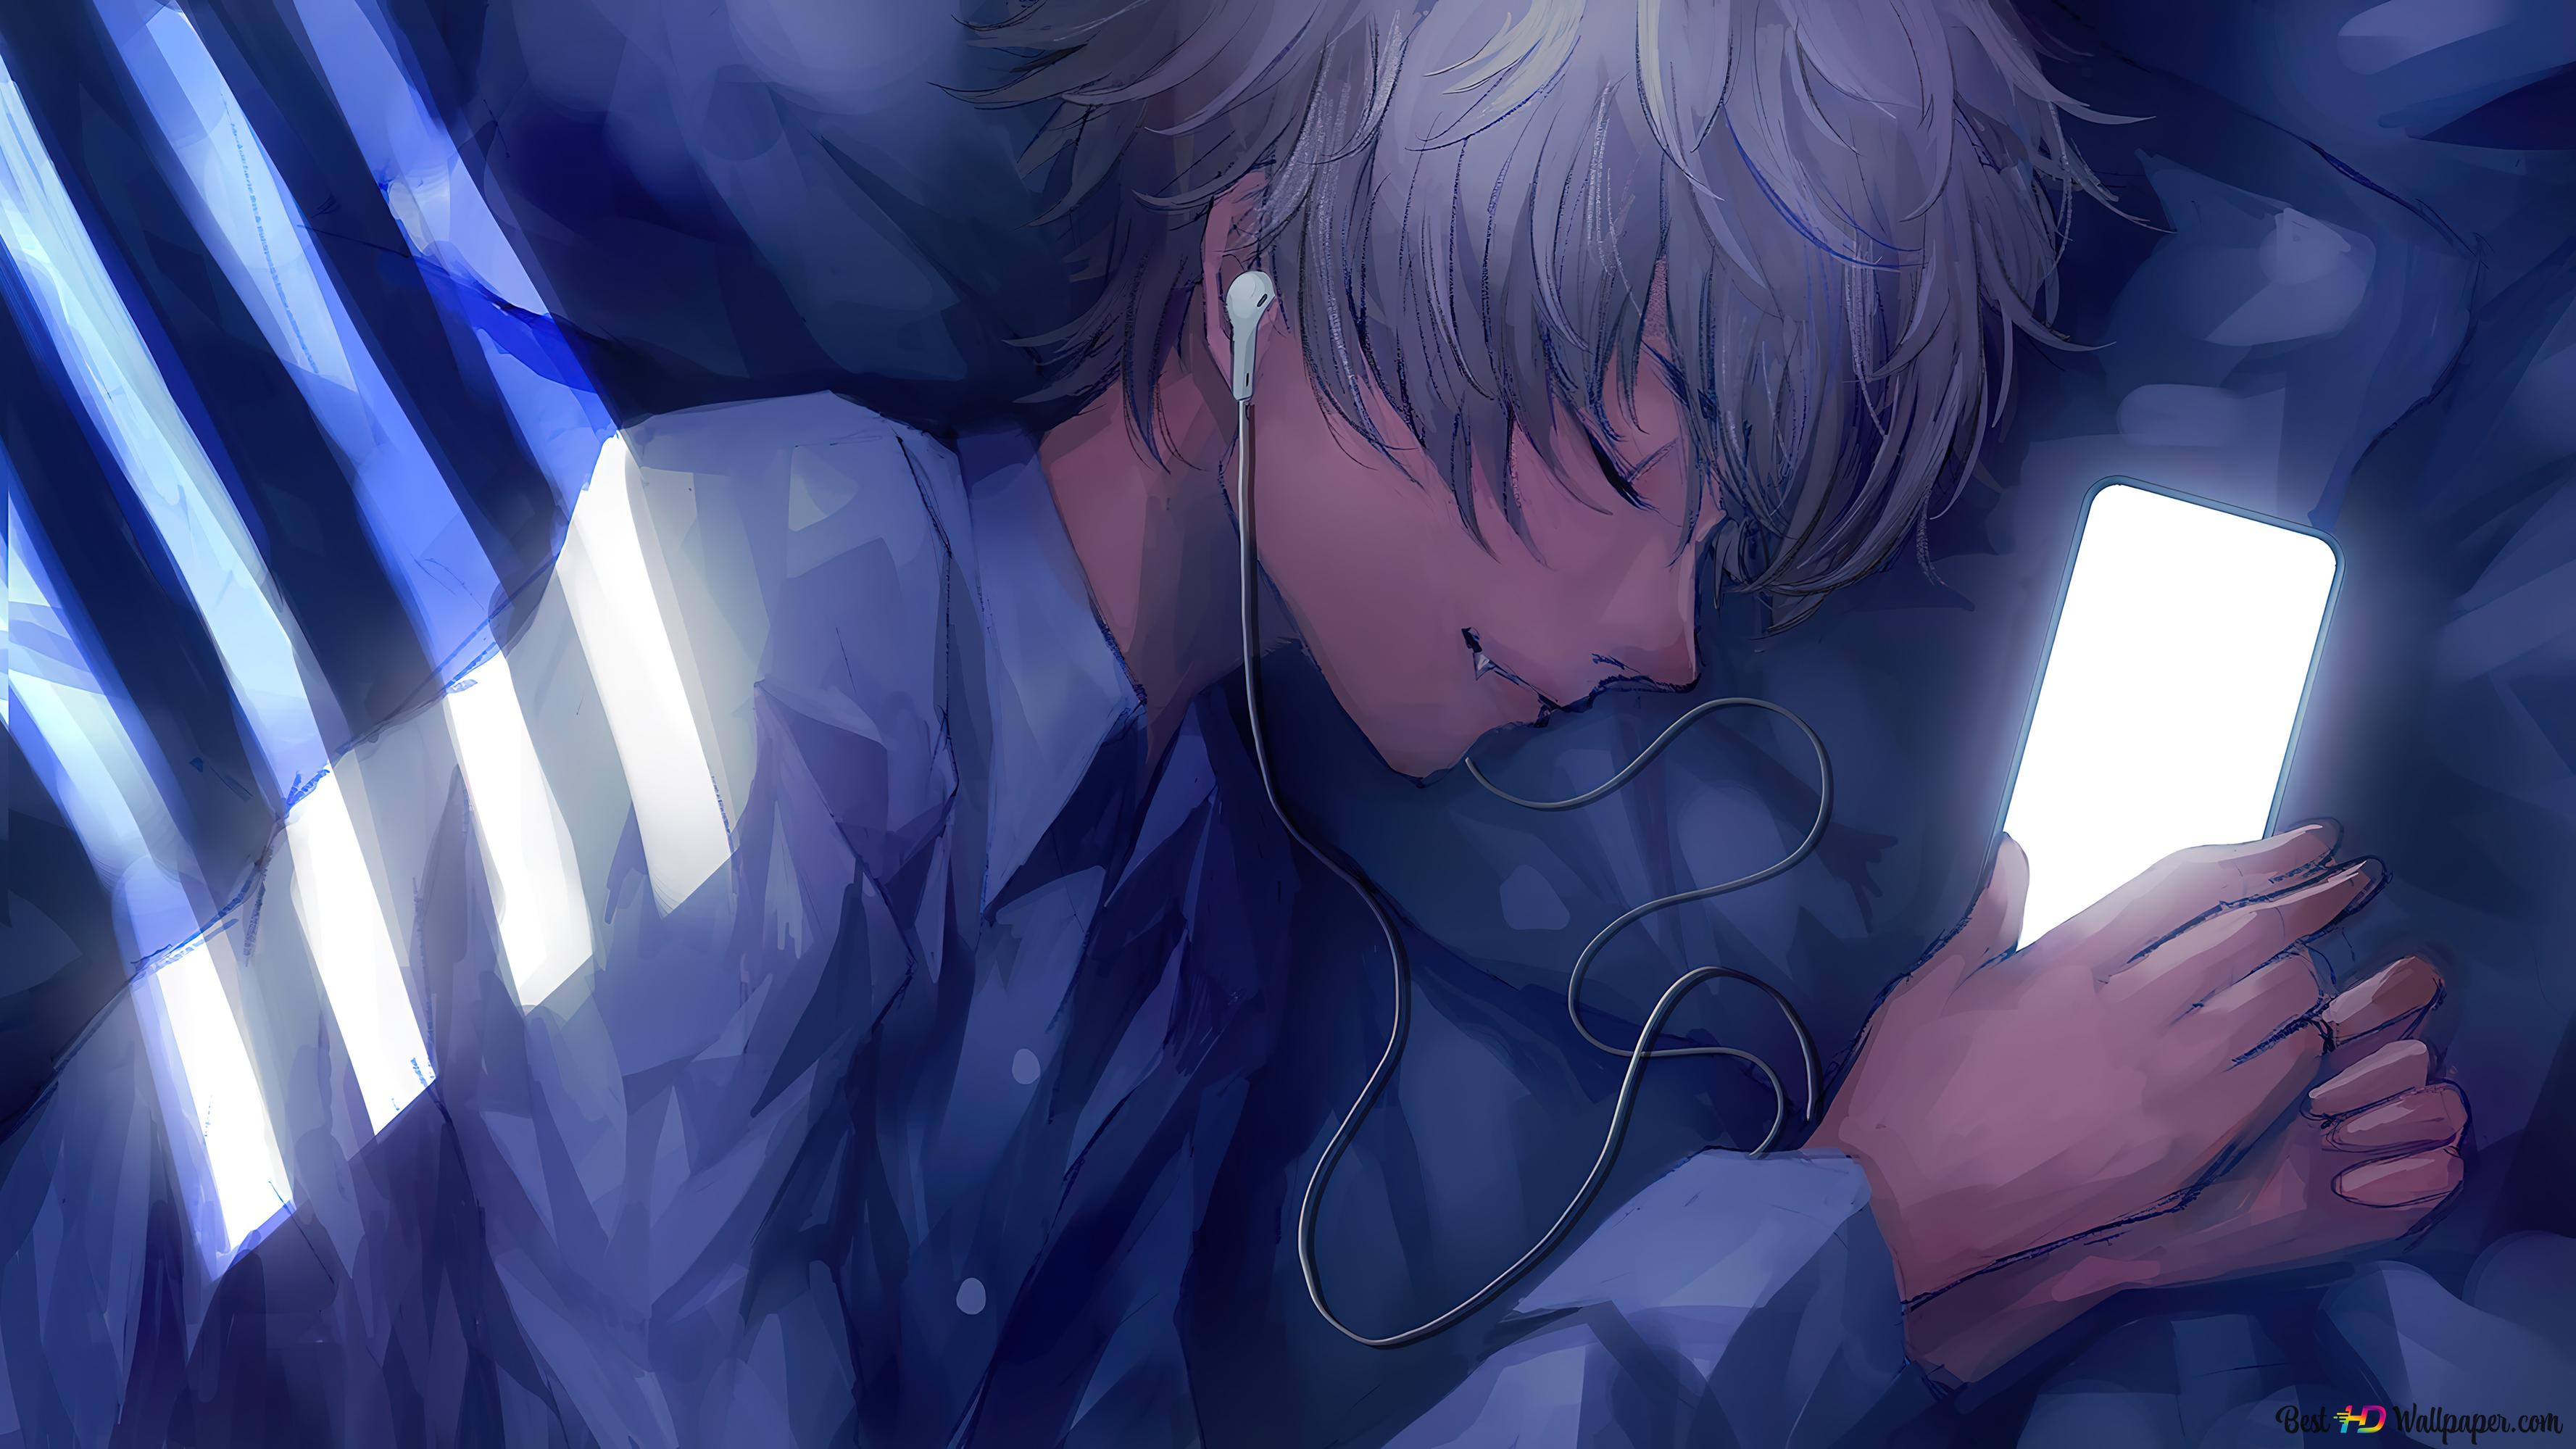 Anime boy sleeping while hearing music 4K wallpaper download